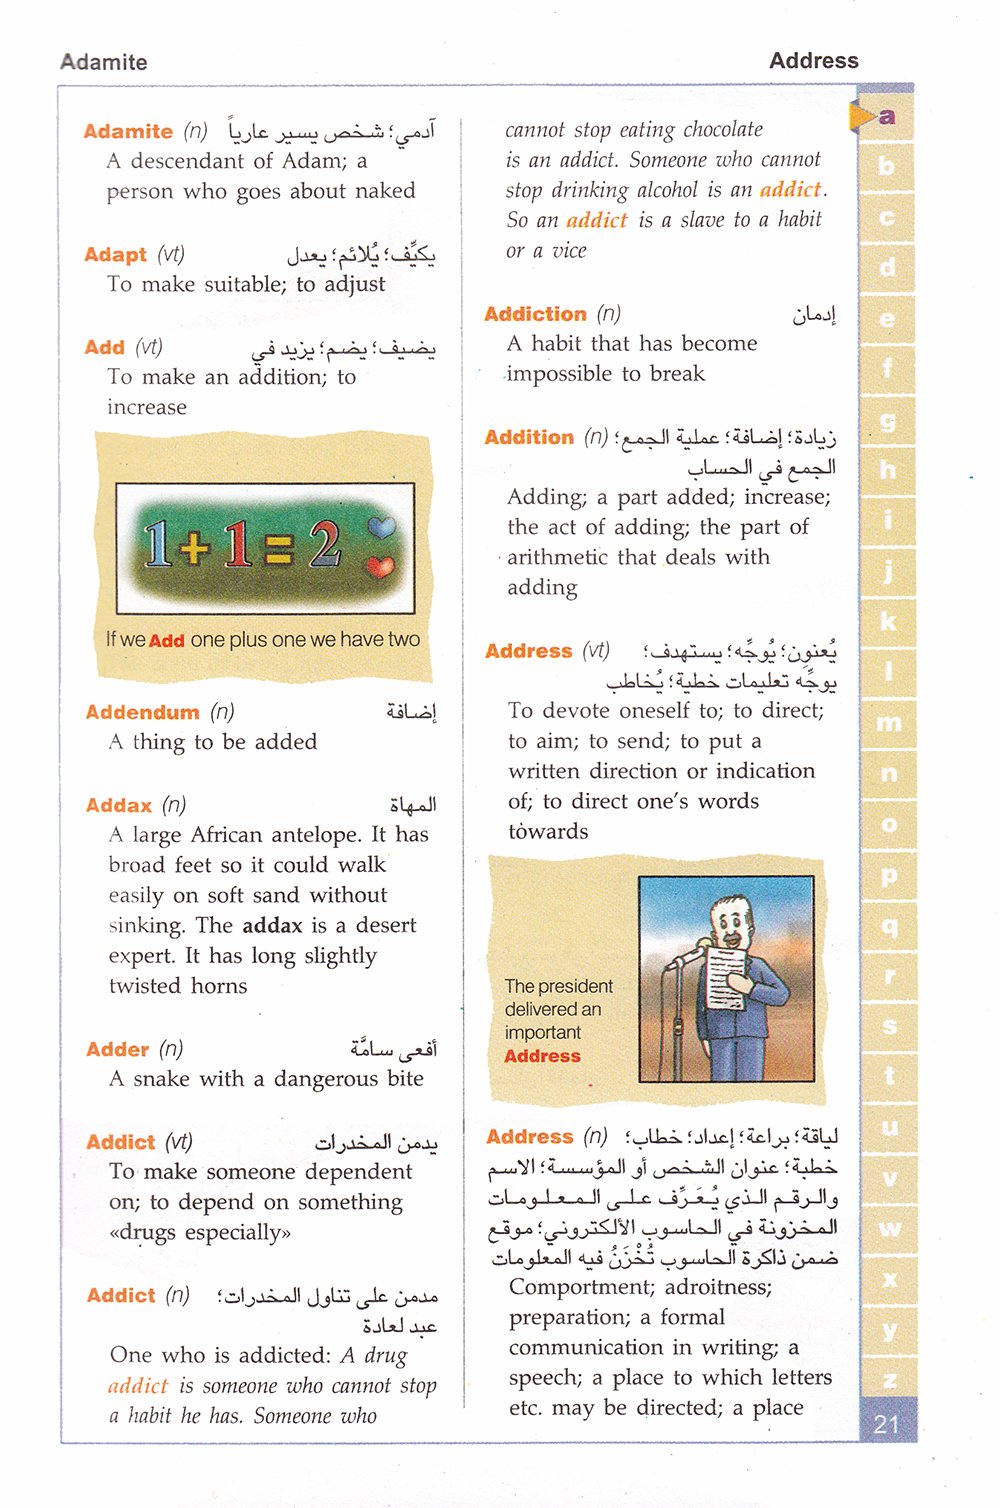 Al Motquan Dictionary- Illustrated